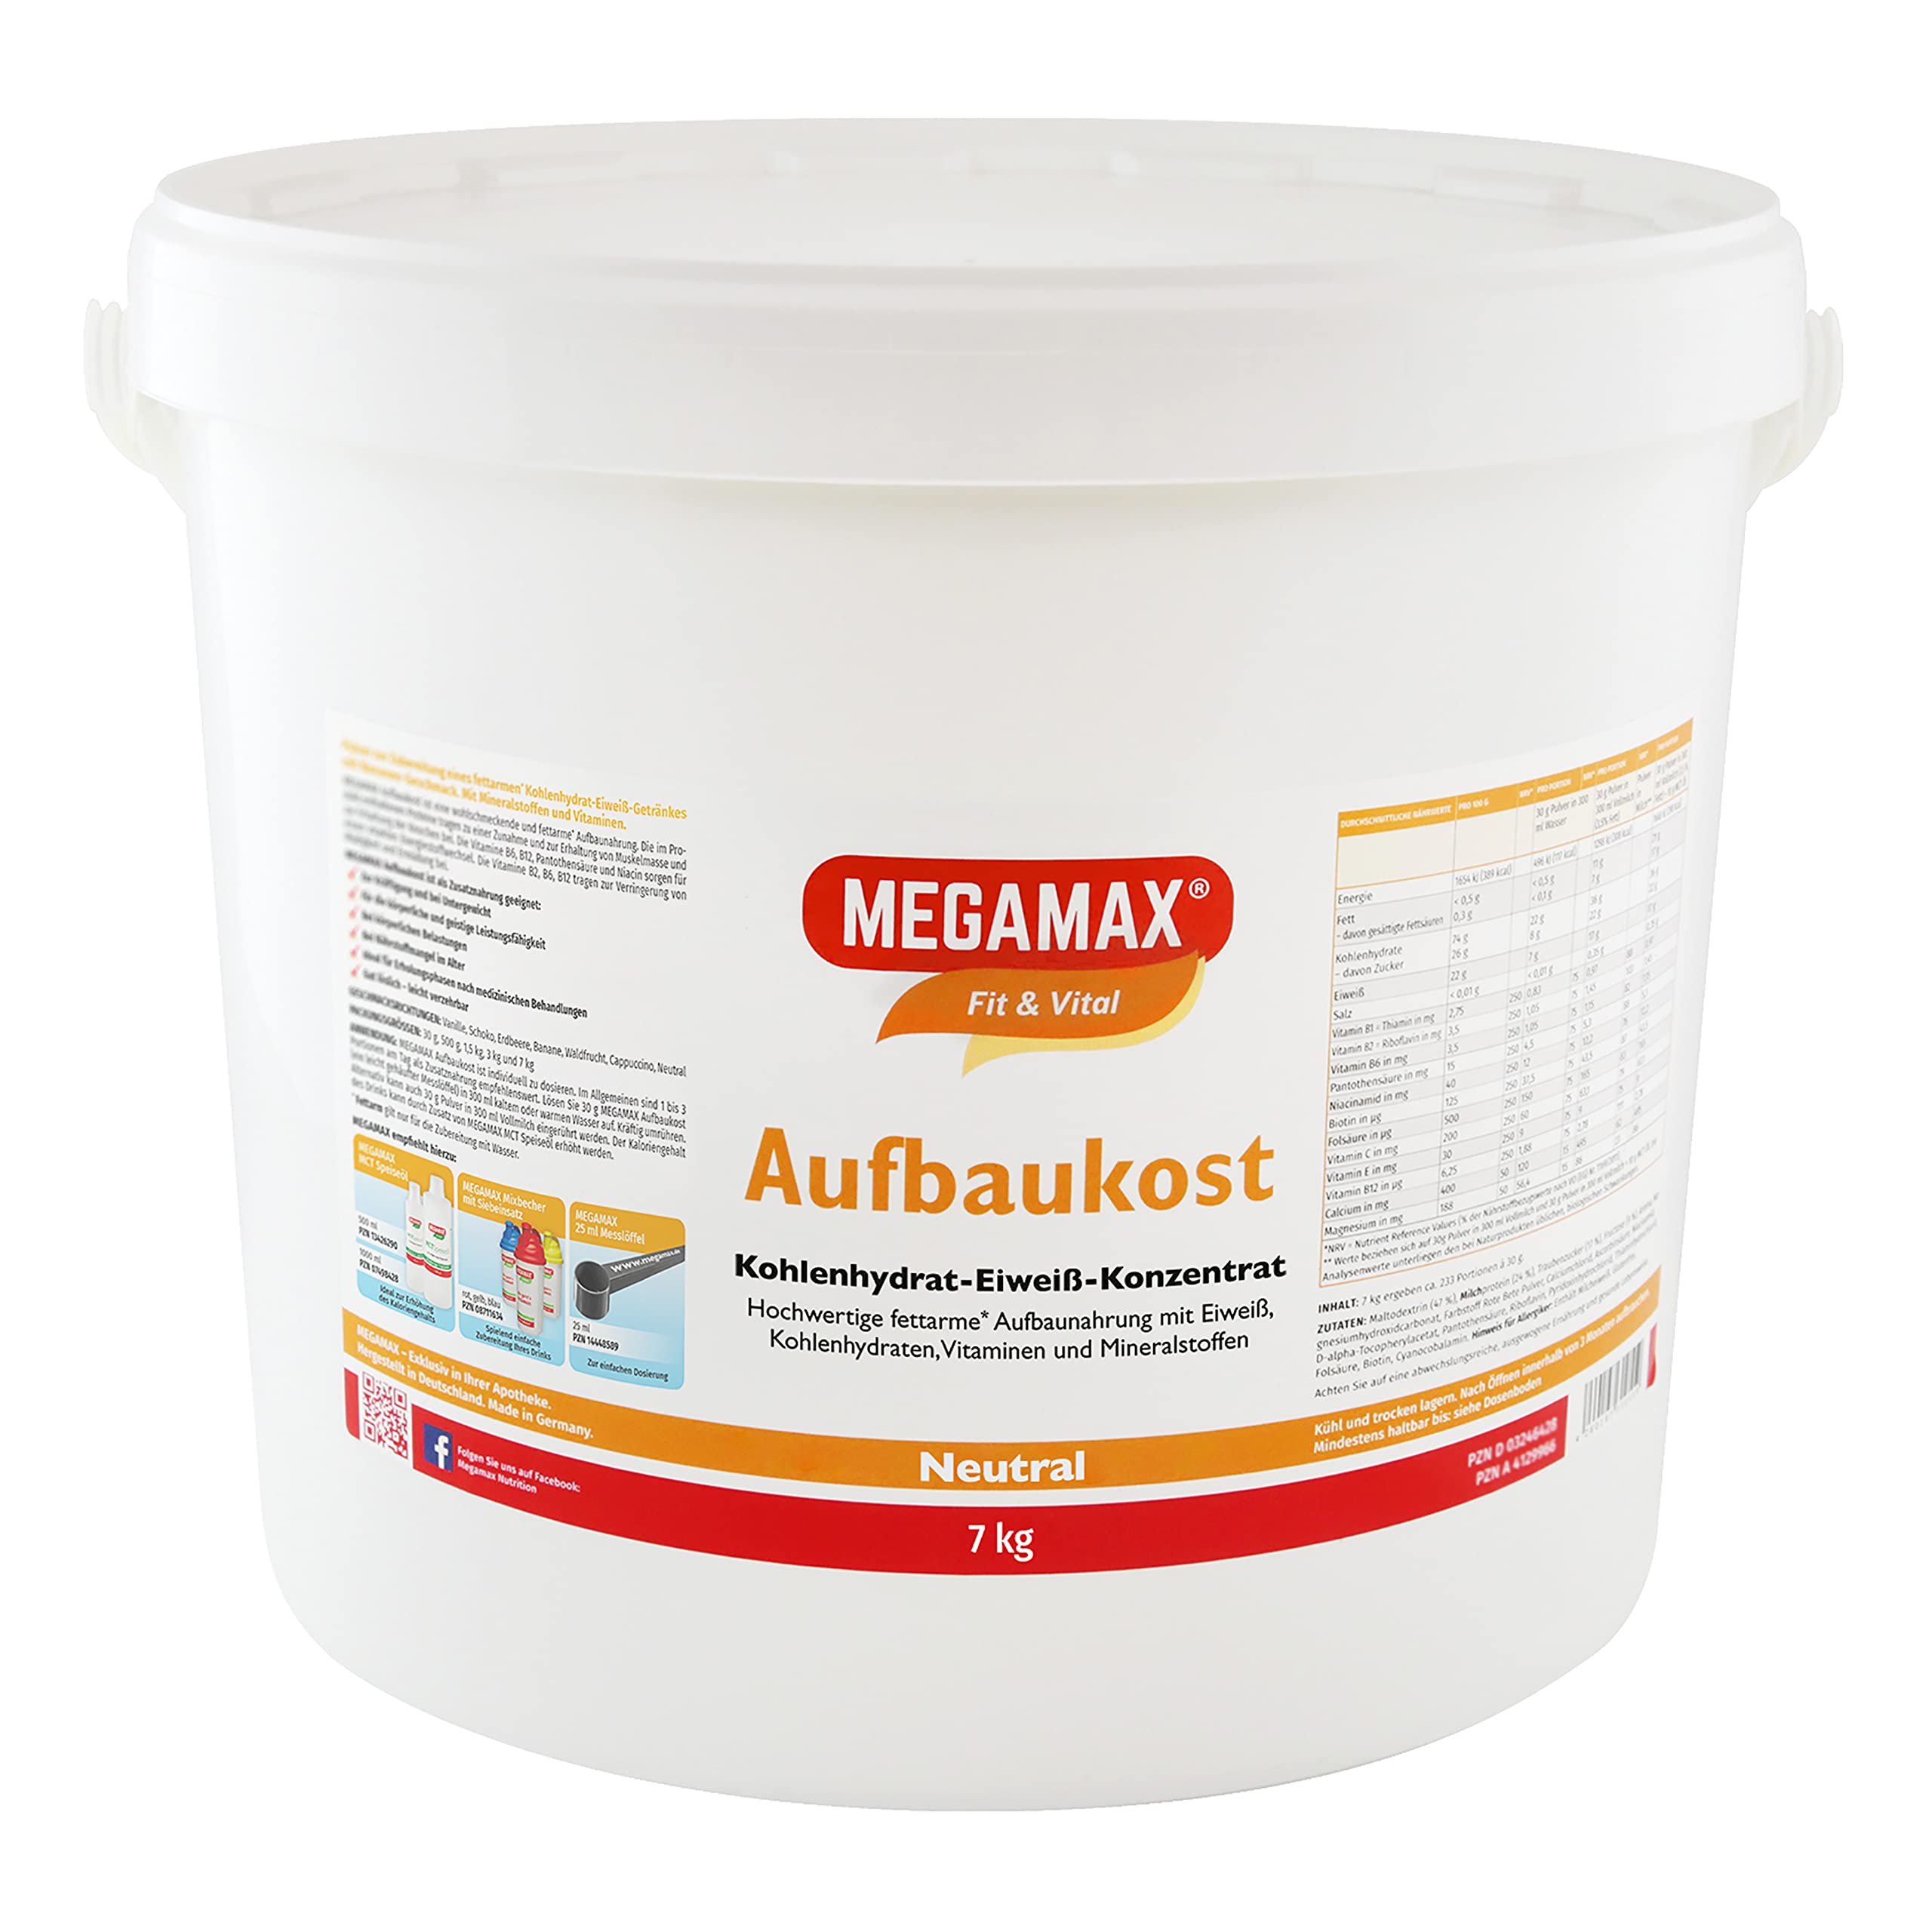 Megamax Aufbaukost 7 kg Neutral Ideal zur Kräftigung und bei Untergewicht - Proteinpulver zur Zubereitung eines fettarmen Kohlenhydrat-Eiweiß-Getränkes für Muskelmasse & Muskelaufbau Gewichtszunahme